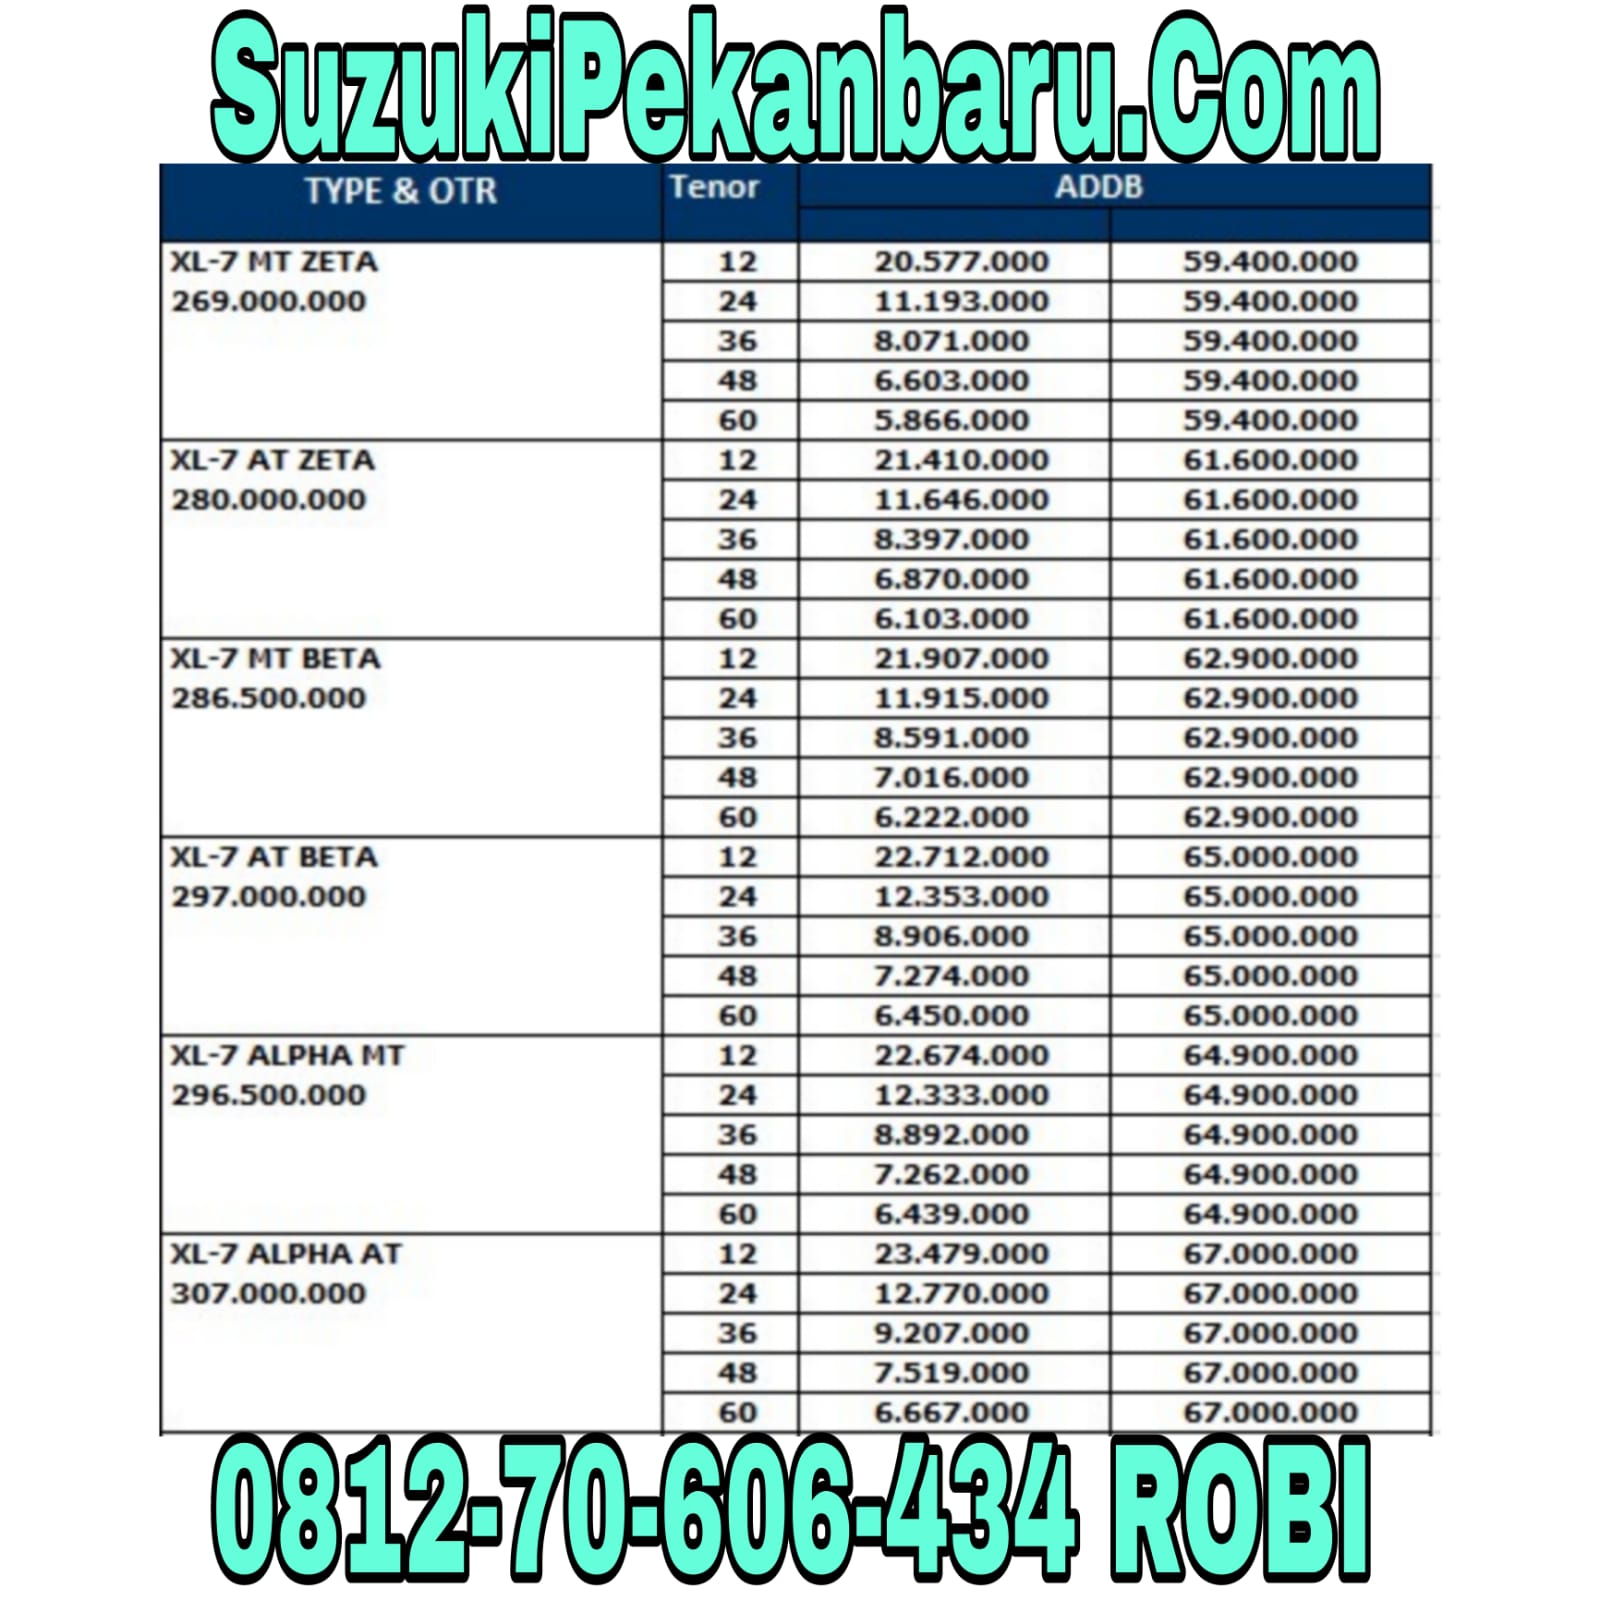 DP Cicilan Brosur Price Diskon List Harga Cashback Angsuran Kredit Baleno Ignis XL7 Agustus Oktober Desember Promo Idul Adha Promo Ramadhan 2022 2023